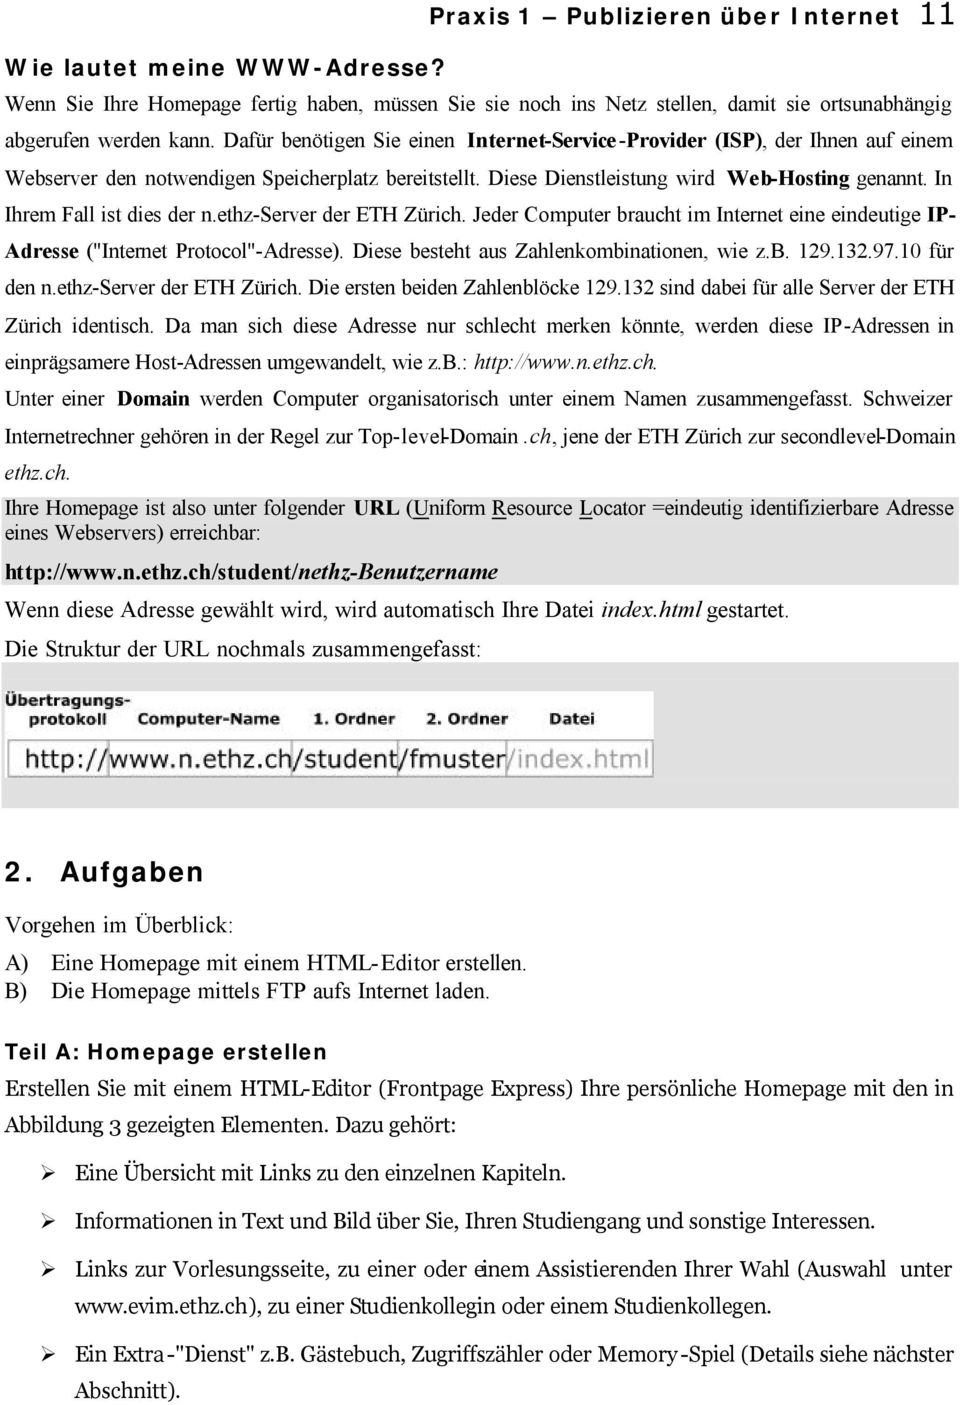 In Ihrem Fall ist dies der n.ethz-server der ETH Zürich. Jeder Computer braucht im Internet eine eindeutige IP- Adresse ("Internet Protocol"-Adresse). Diese besteht aus Zahlenkombinationen, wie z.b. 129.